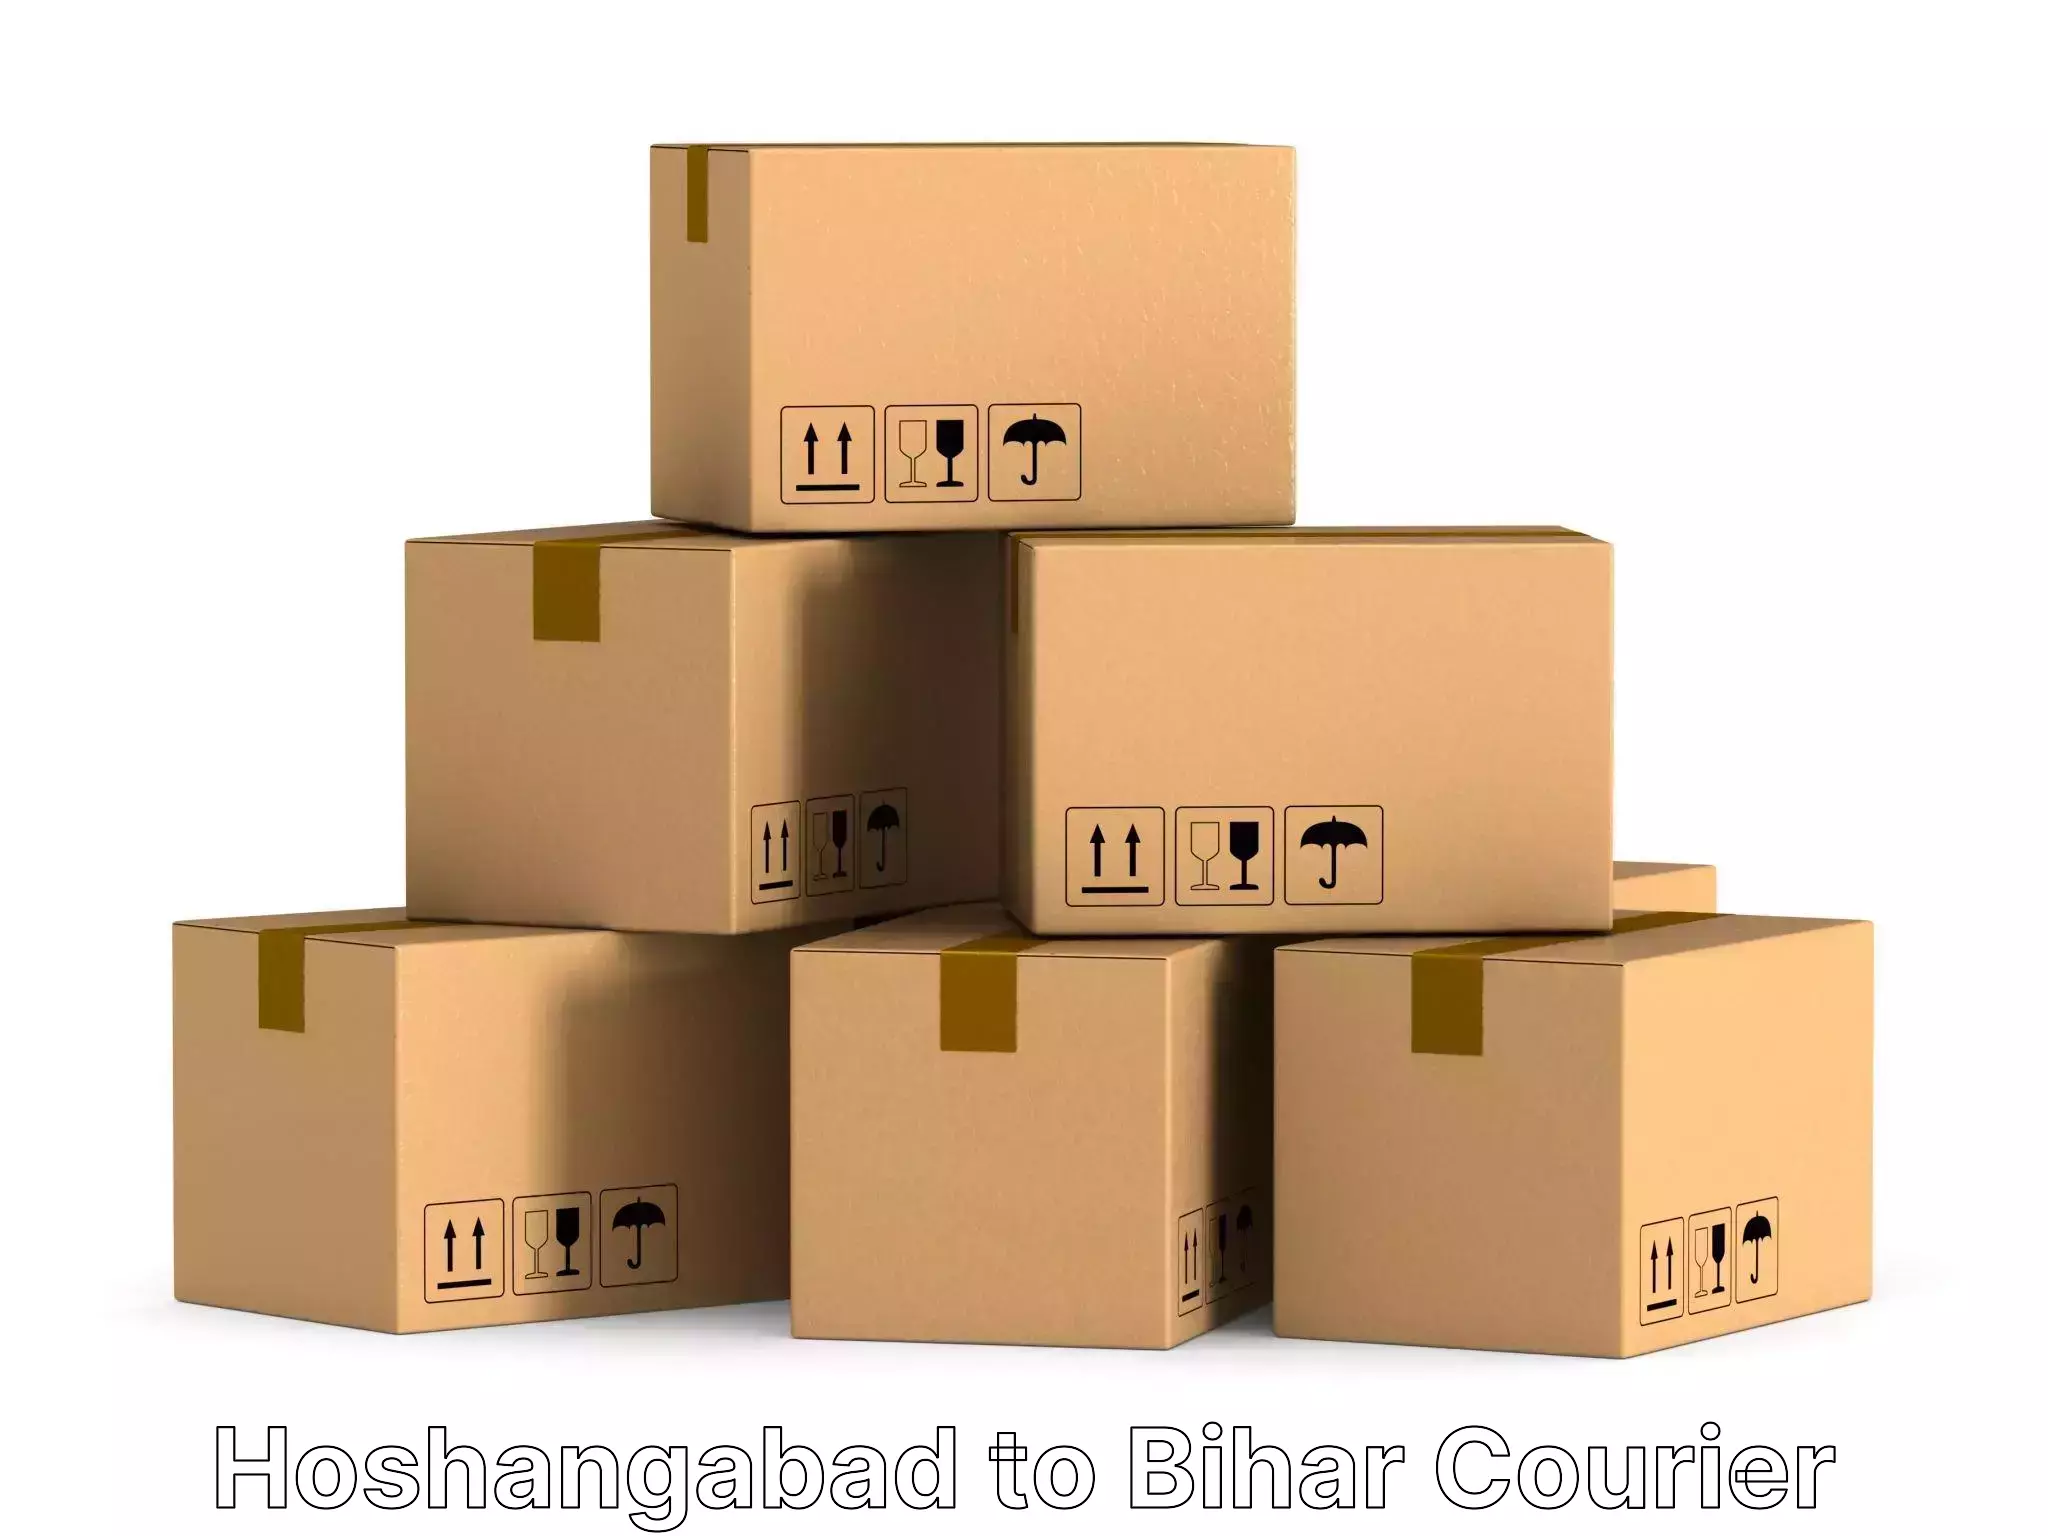 Household moving strategies Hoshangabad to Bihar